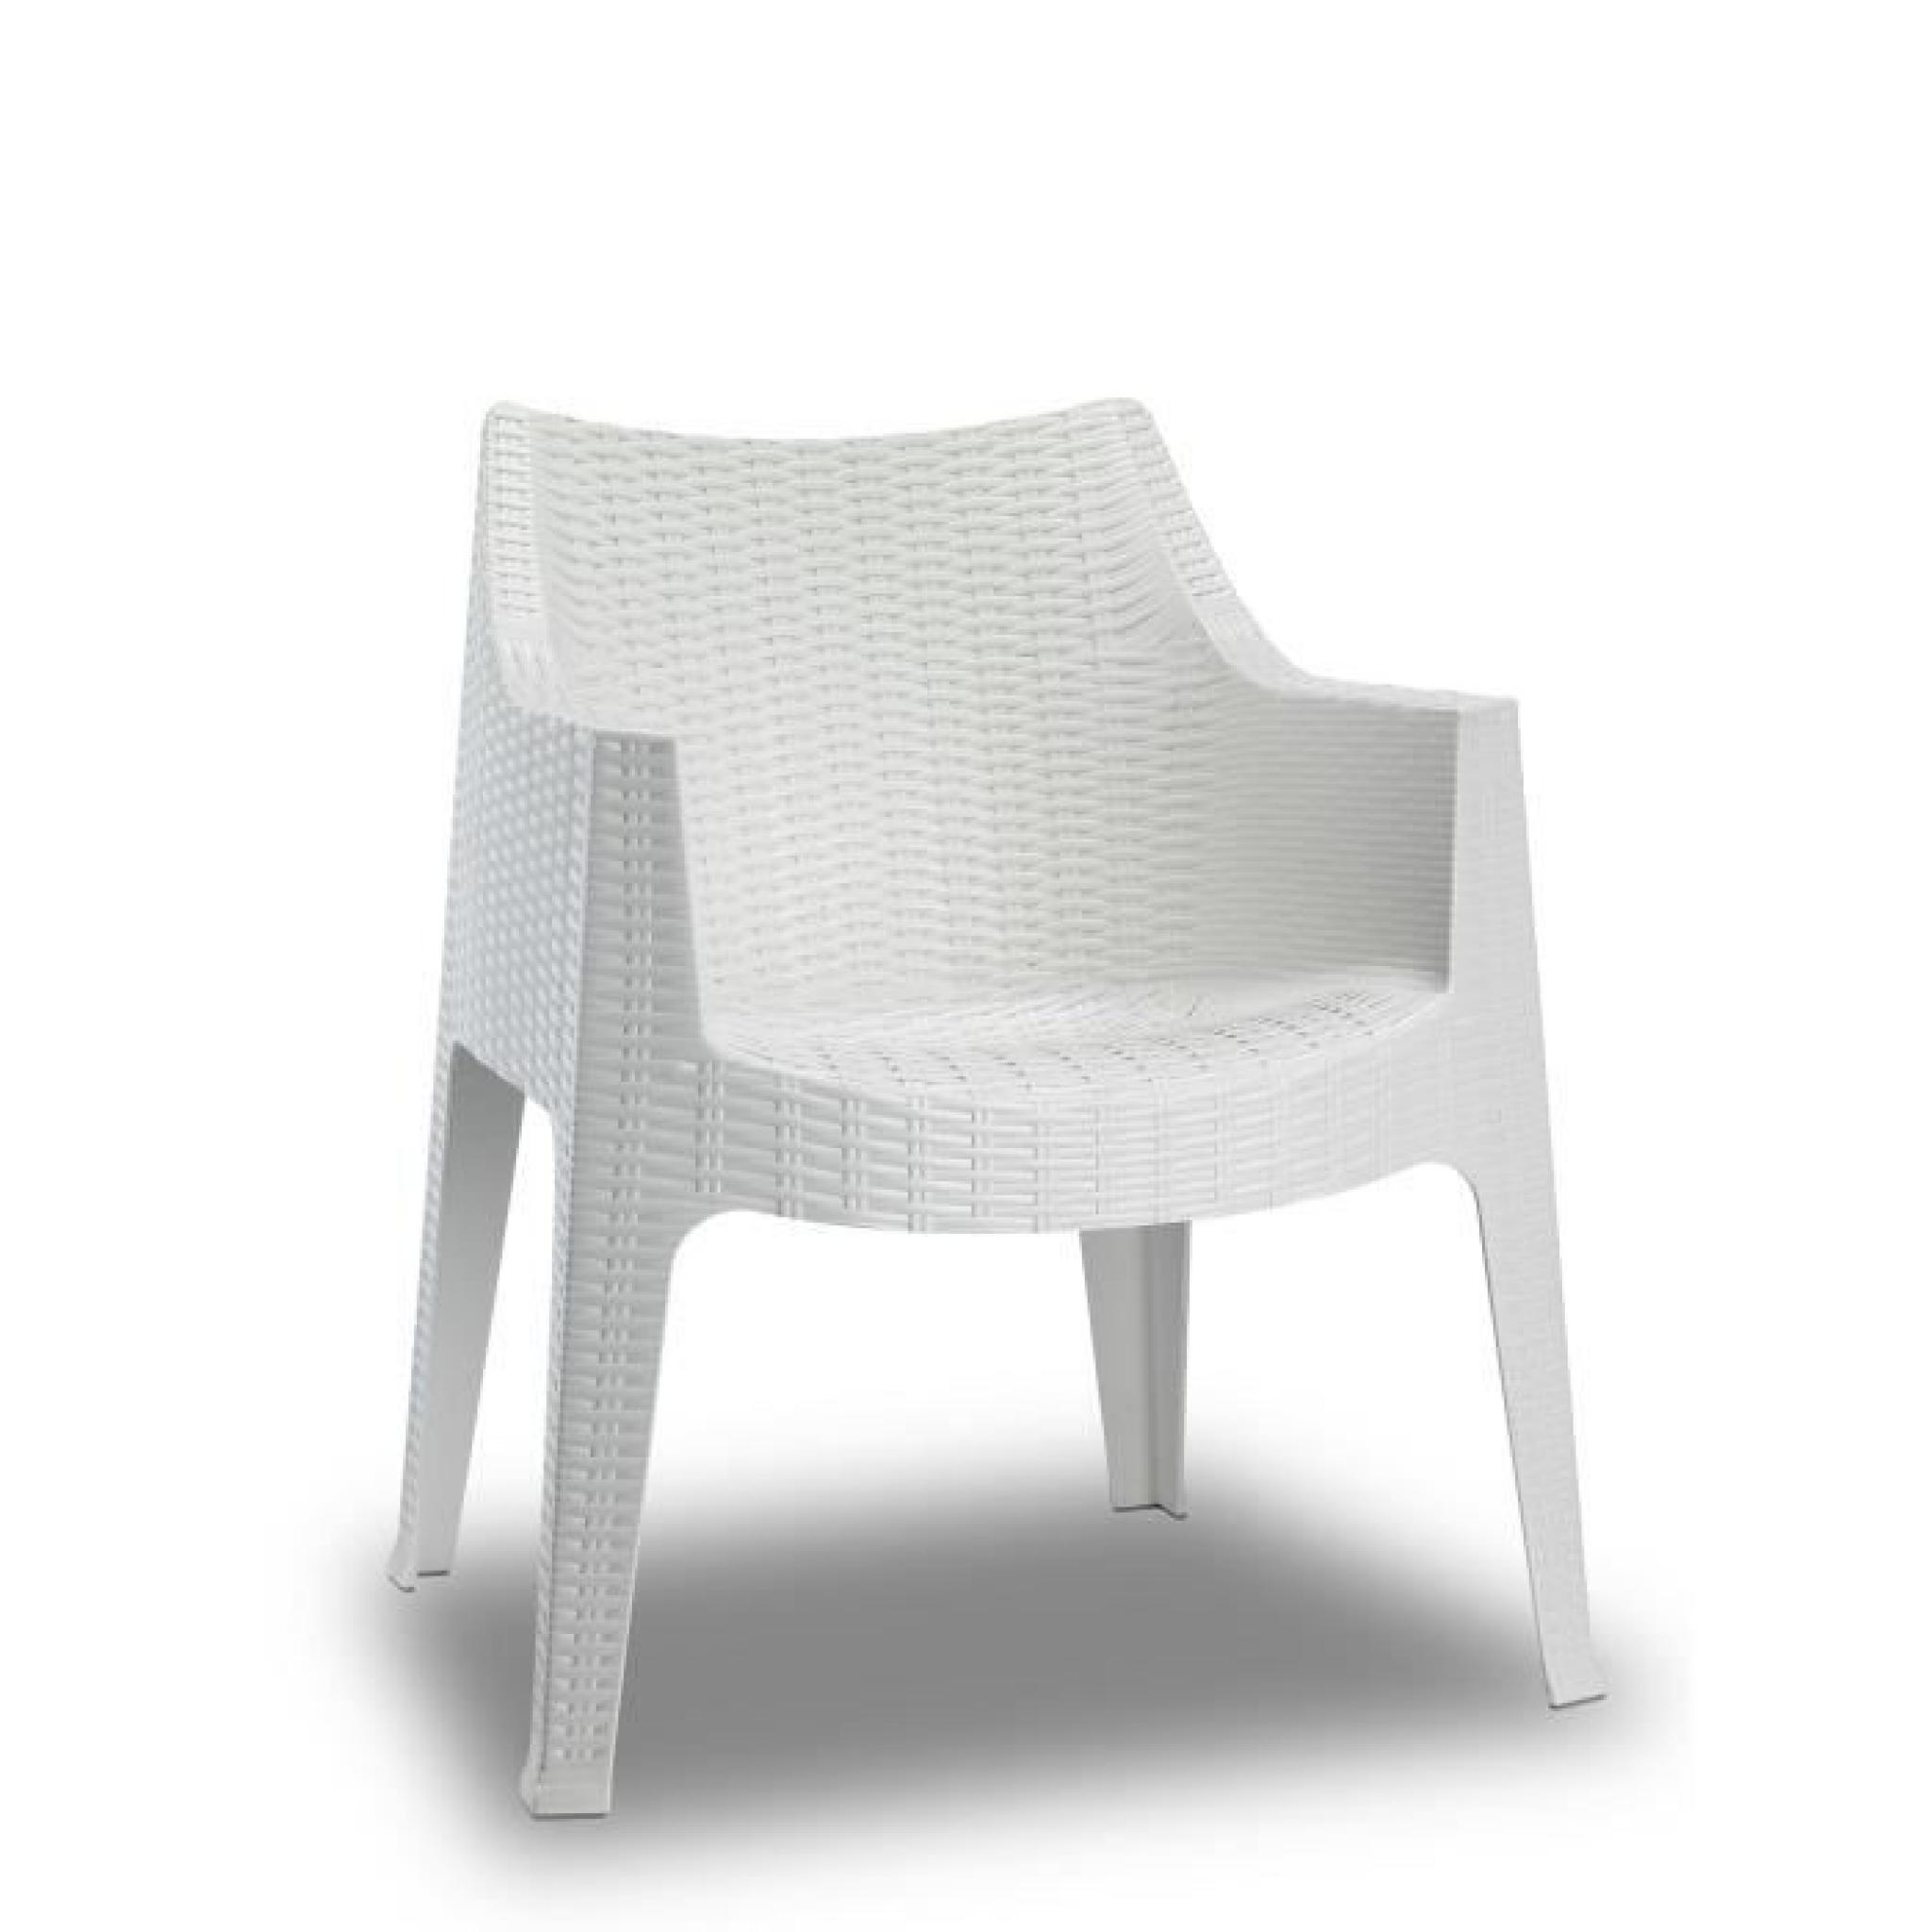 Chaise tissee blanche design - MAXIMA blanche - deco